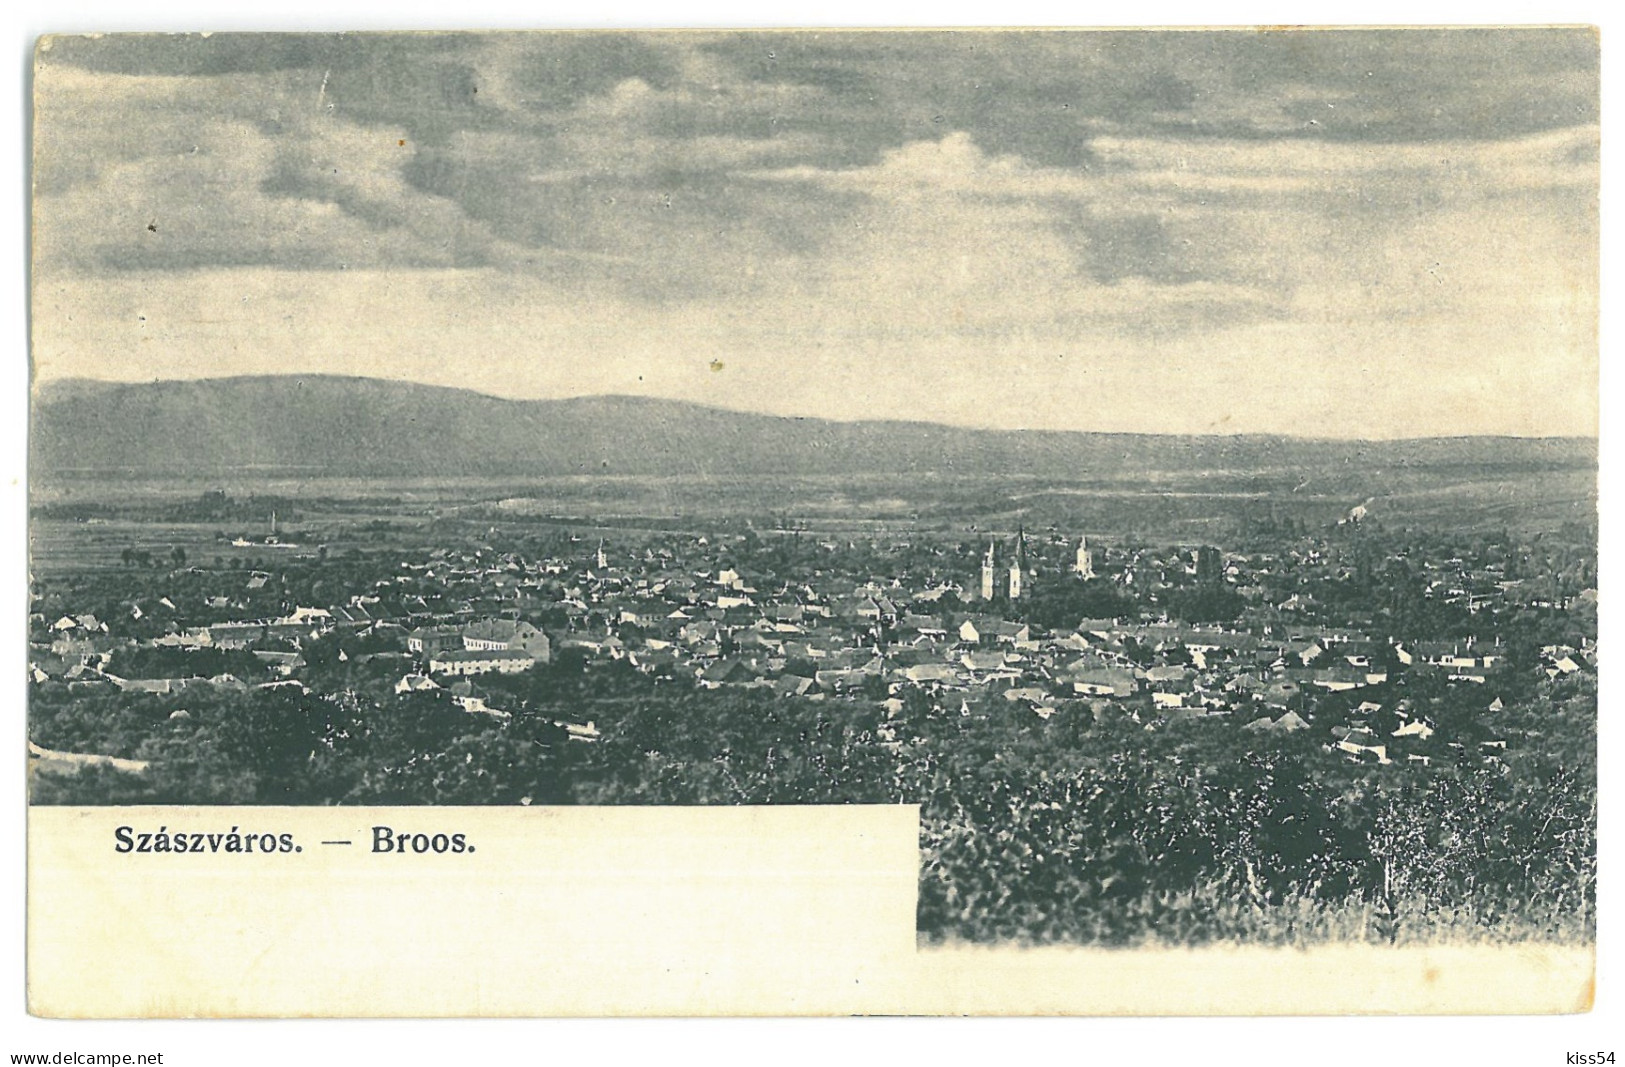 RO 35 - 23263 ORASTIE, Hunedoara, Panorama,  Romania - Old Postcard - Used - 1907 - Rumania